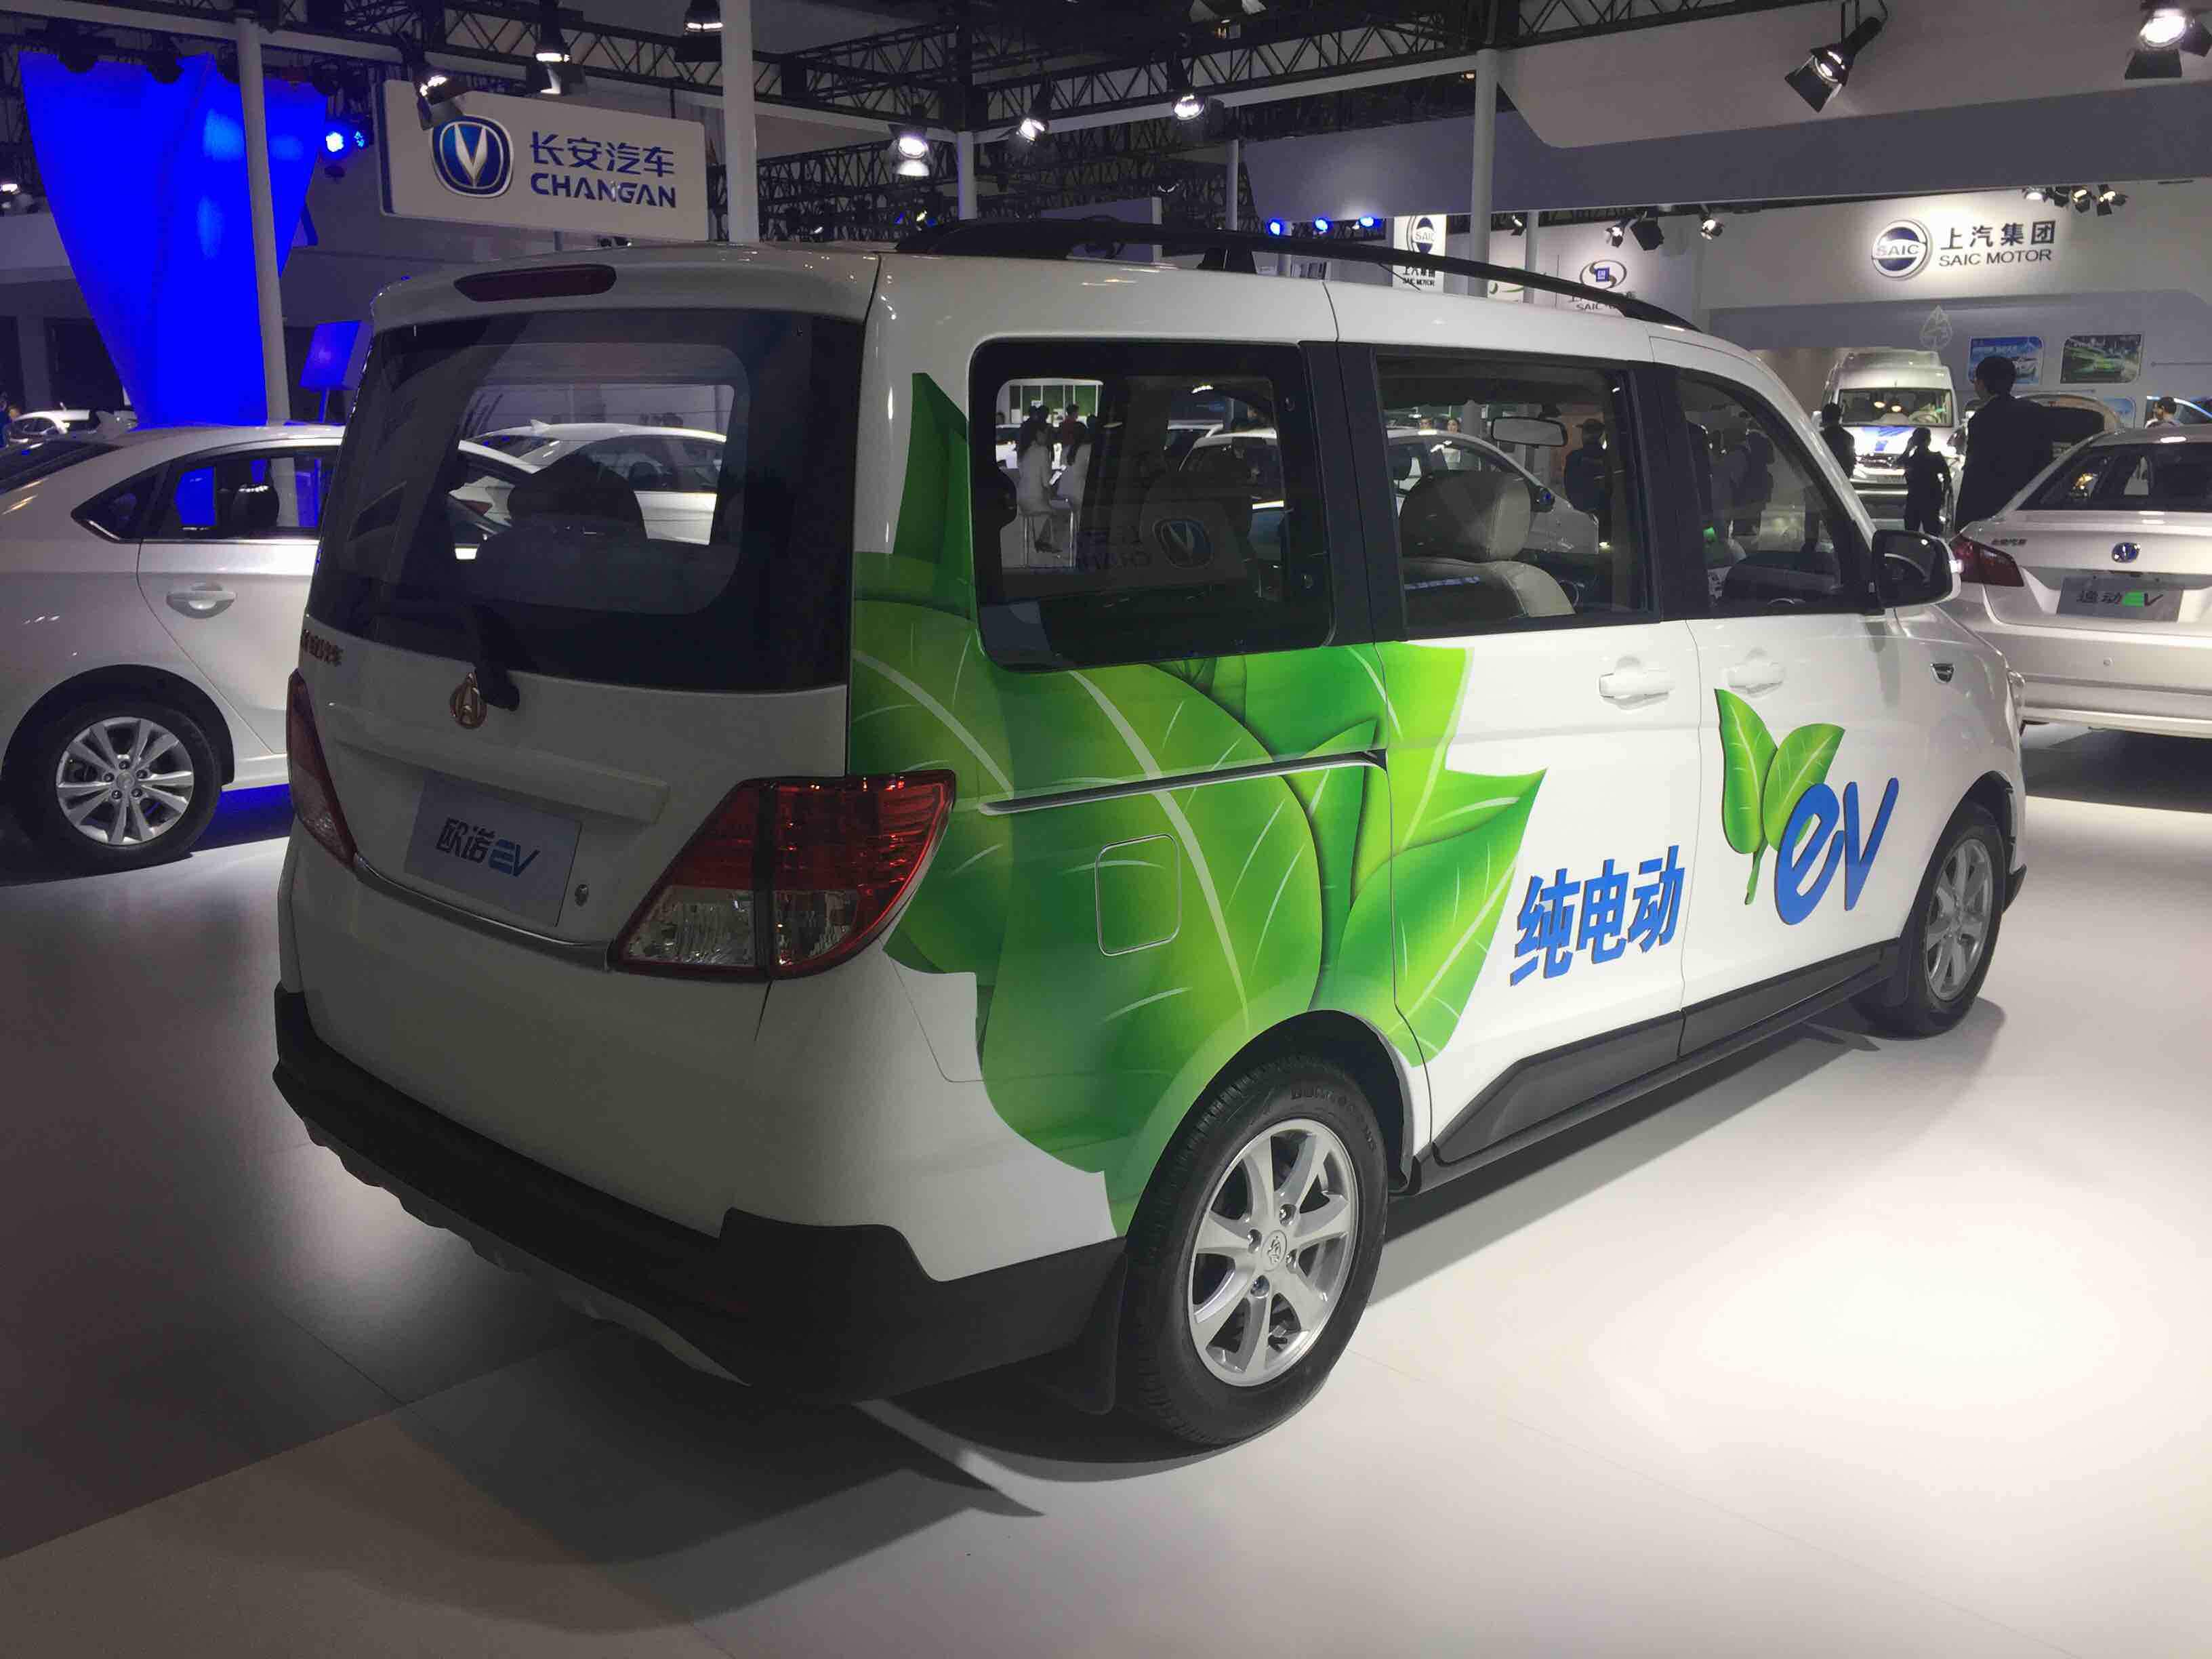 在本次新能源车展上,长安还发布了欧诺纯电动版,欧诺ev.